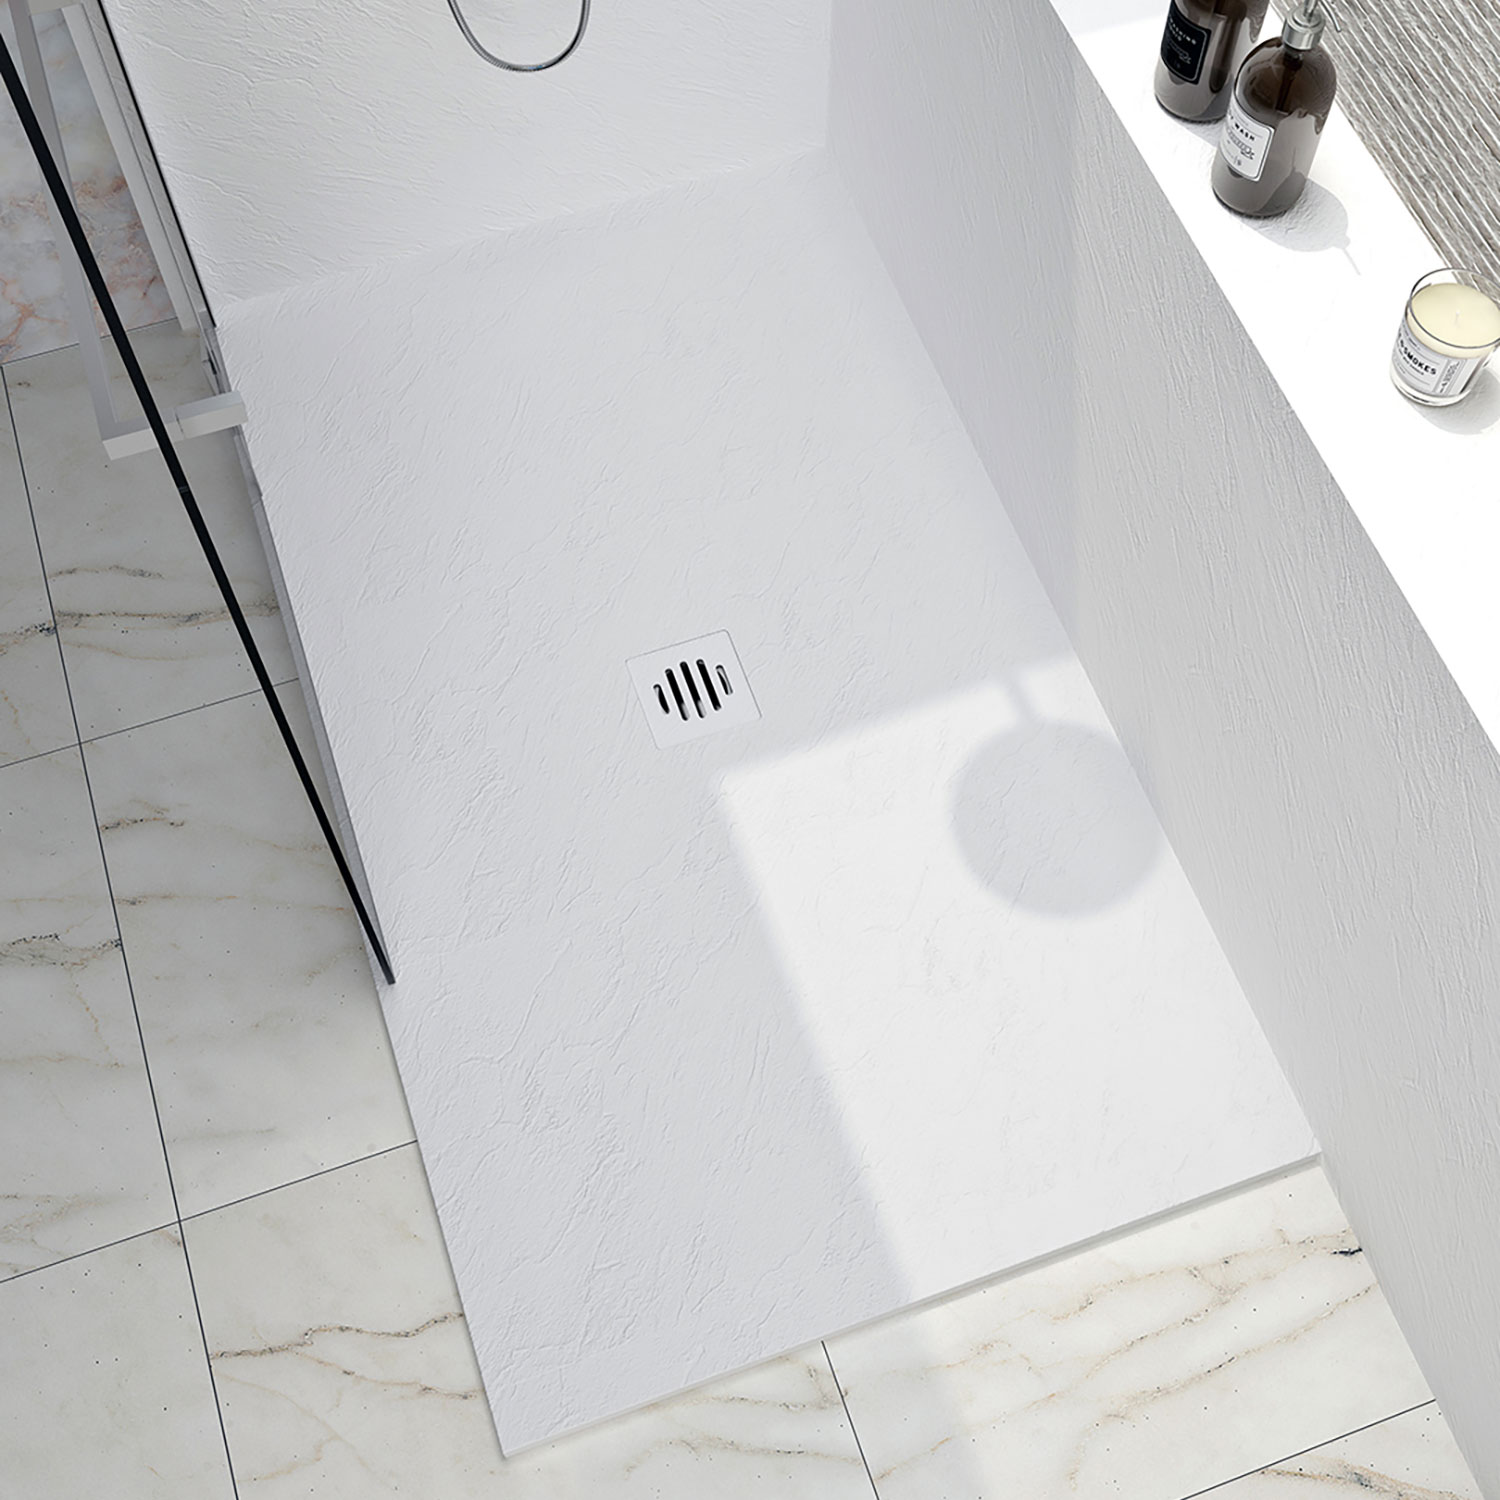 Shower base Slate 36 x 36, custom-made tile flange installation, in white